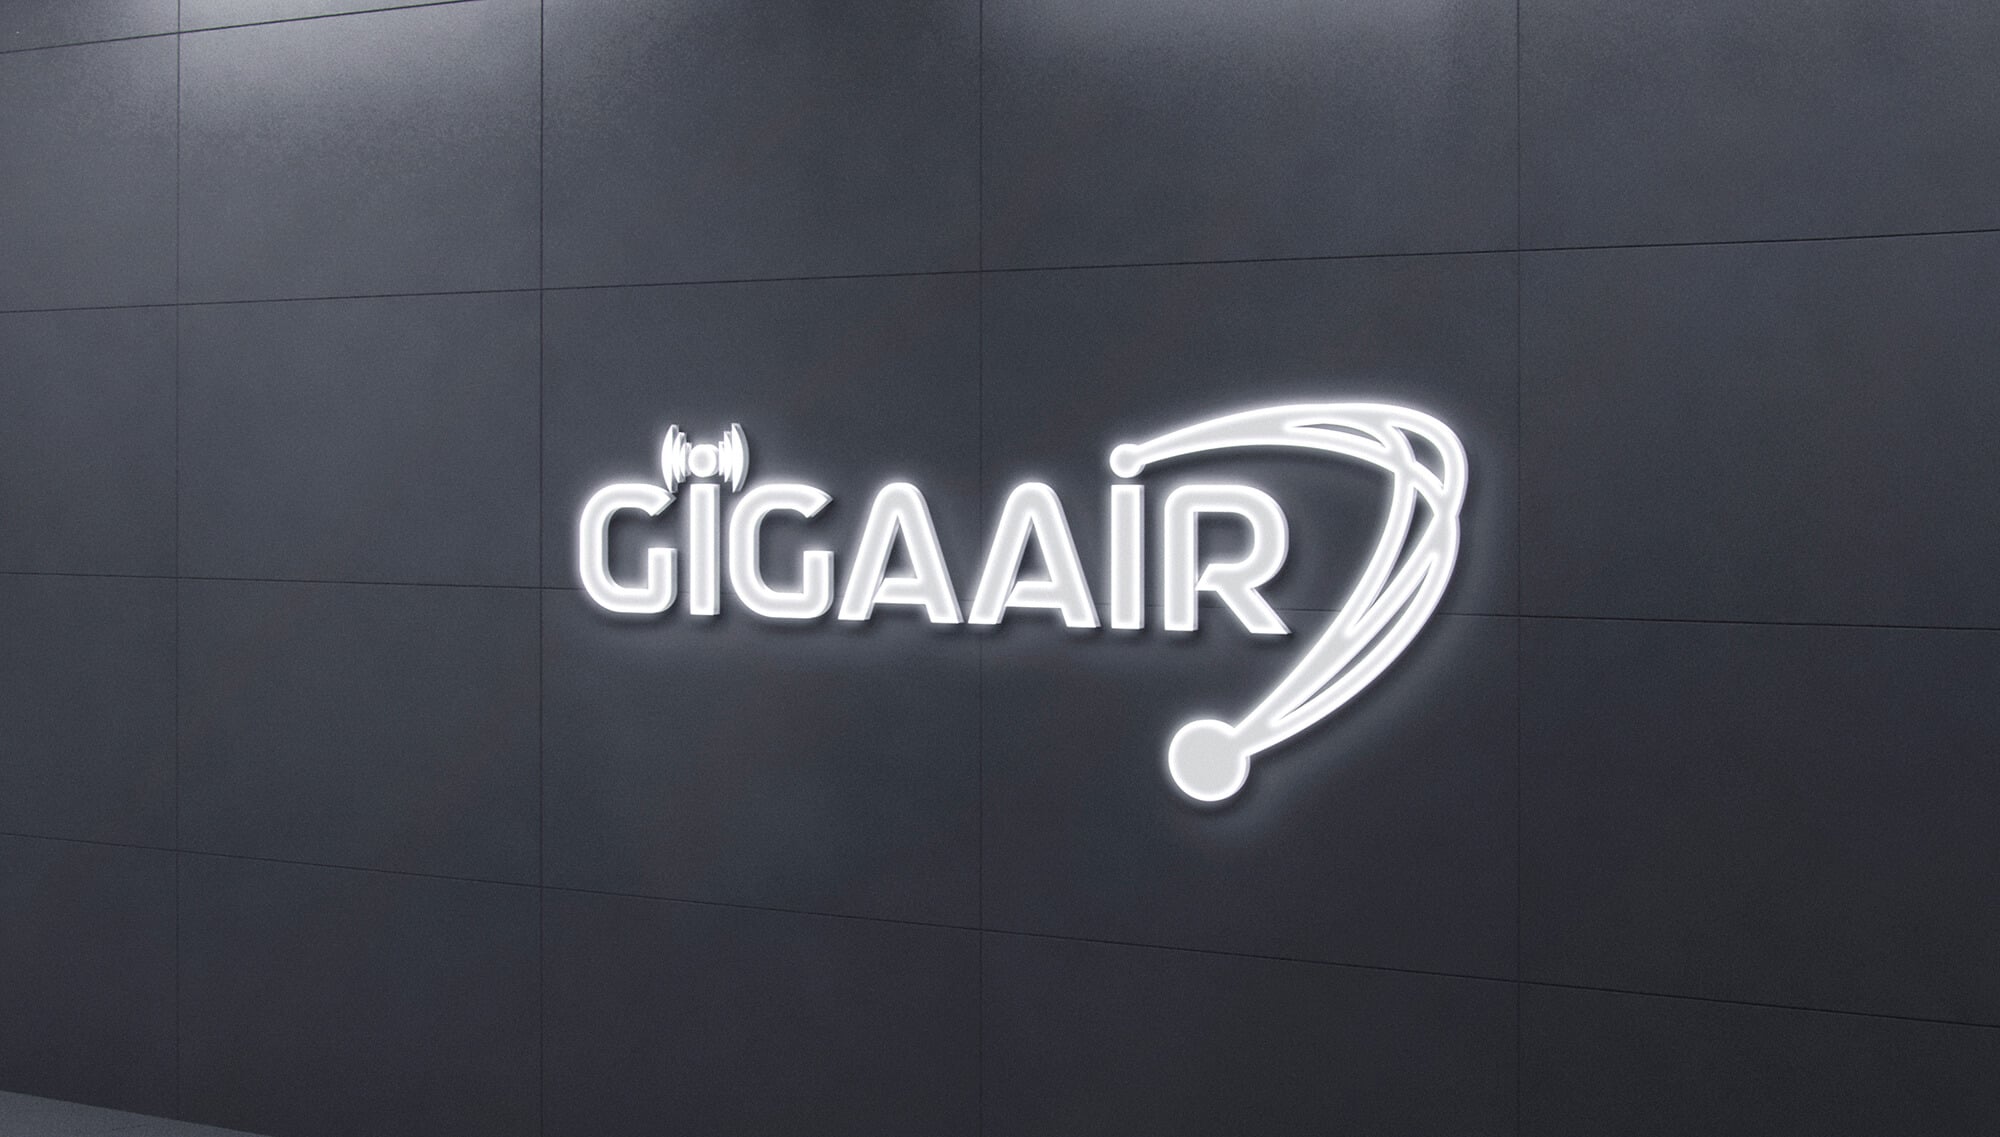 GigaAir x One Branding Agency Logo Concept Design (3)